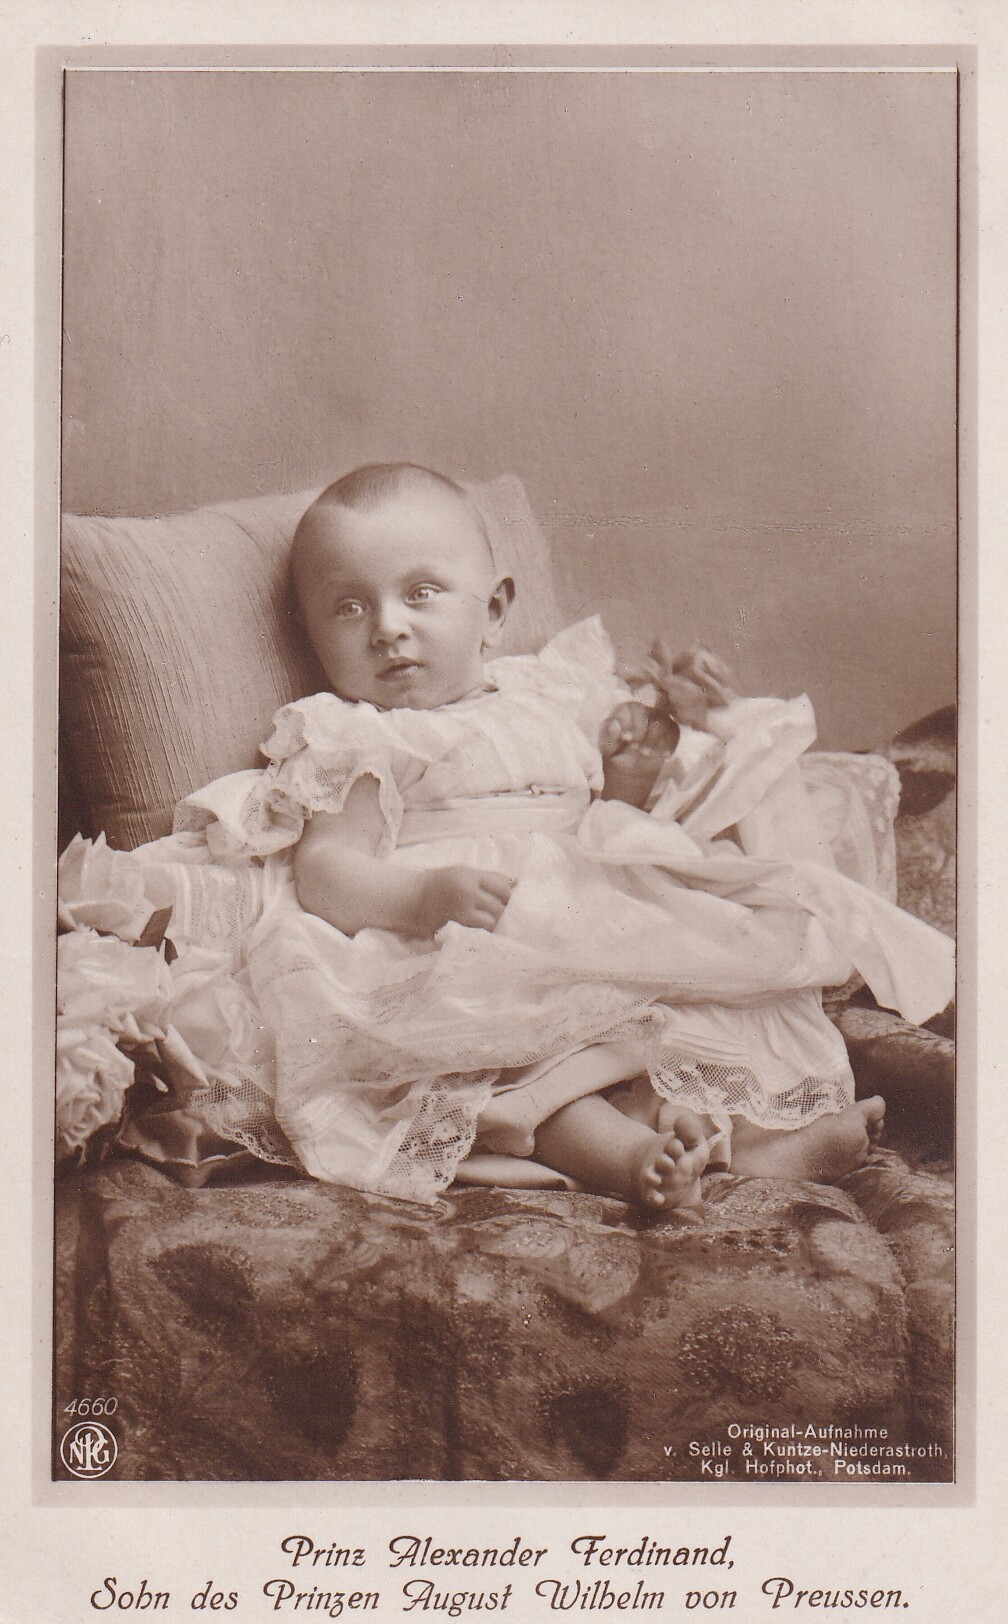 Bildpostkarte mit Foto des Prinzen Alexander Ferdinand von Preußen, 1913 (Schloß Wernigerode GmbH RR-F)